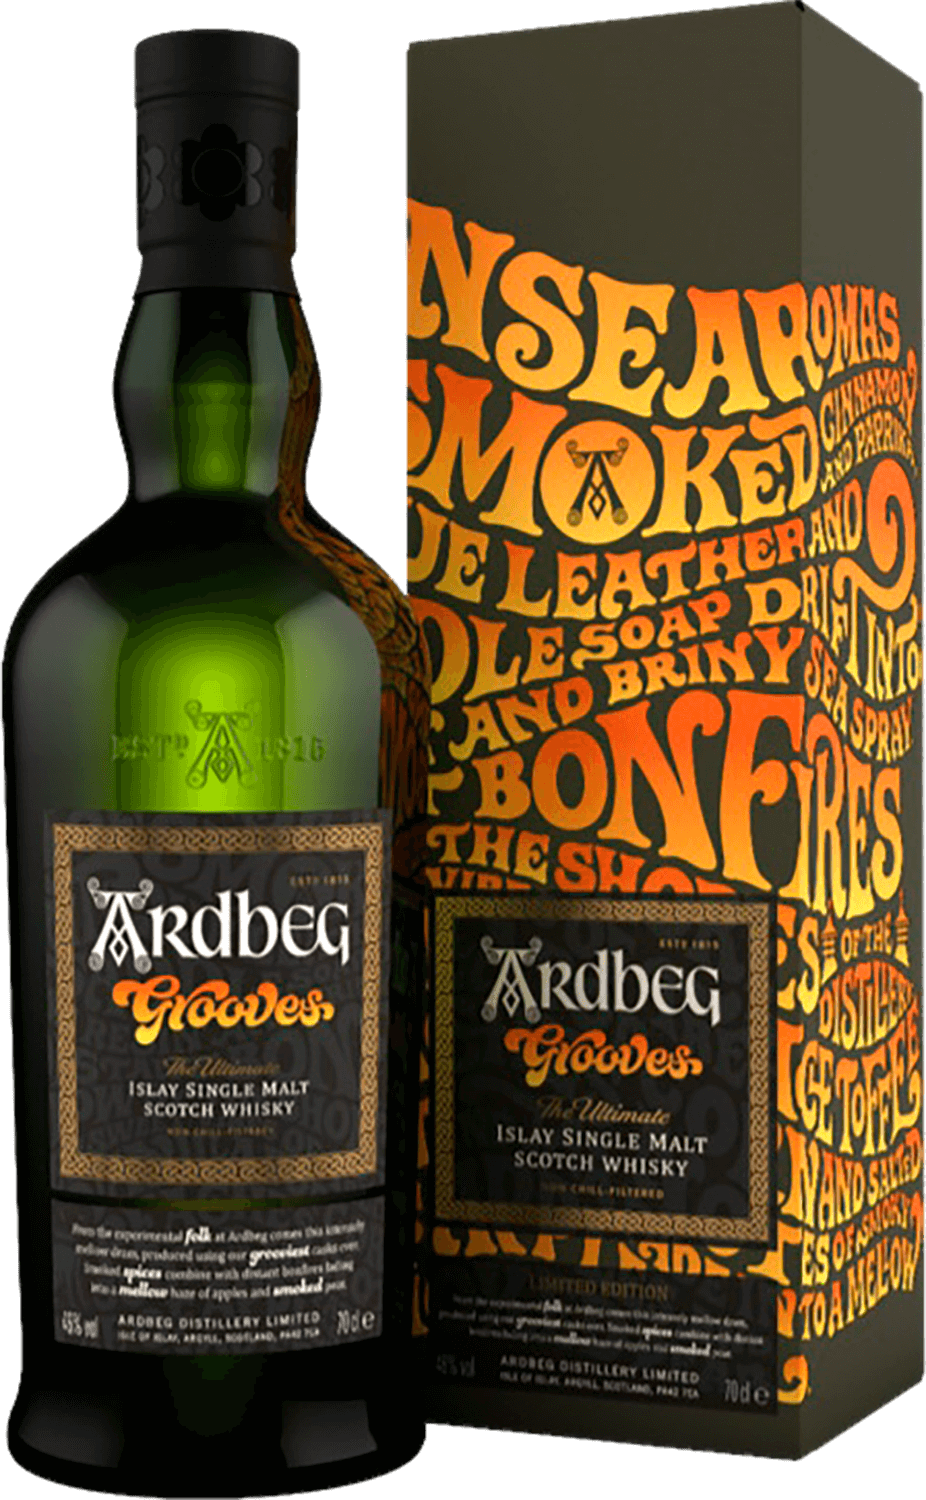 Ardbeg Grooves Islay Single Malt Scotch Whisky (gift box) laphroaig select islay single malt scotch whisky gift box